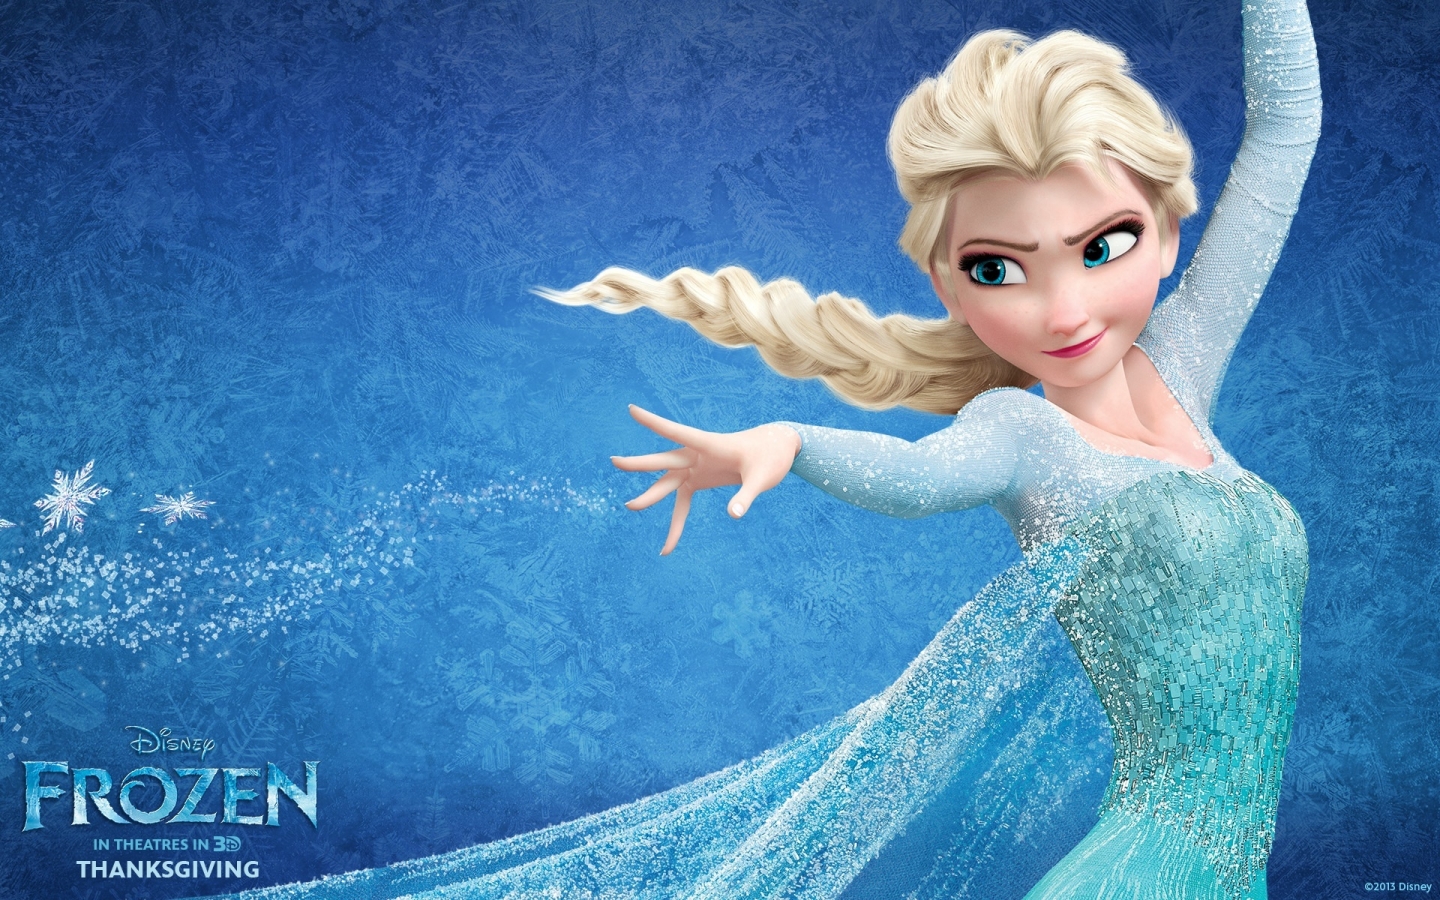 Frozen Elsa for 1440 x 900 widescreen resolution